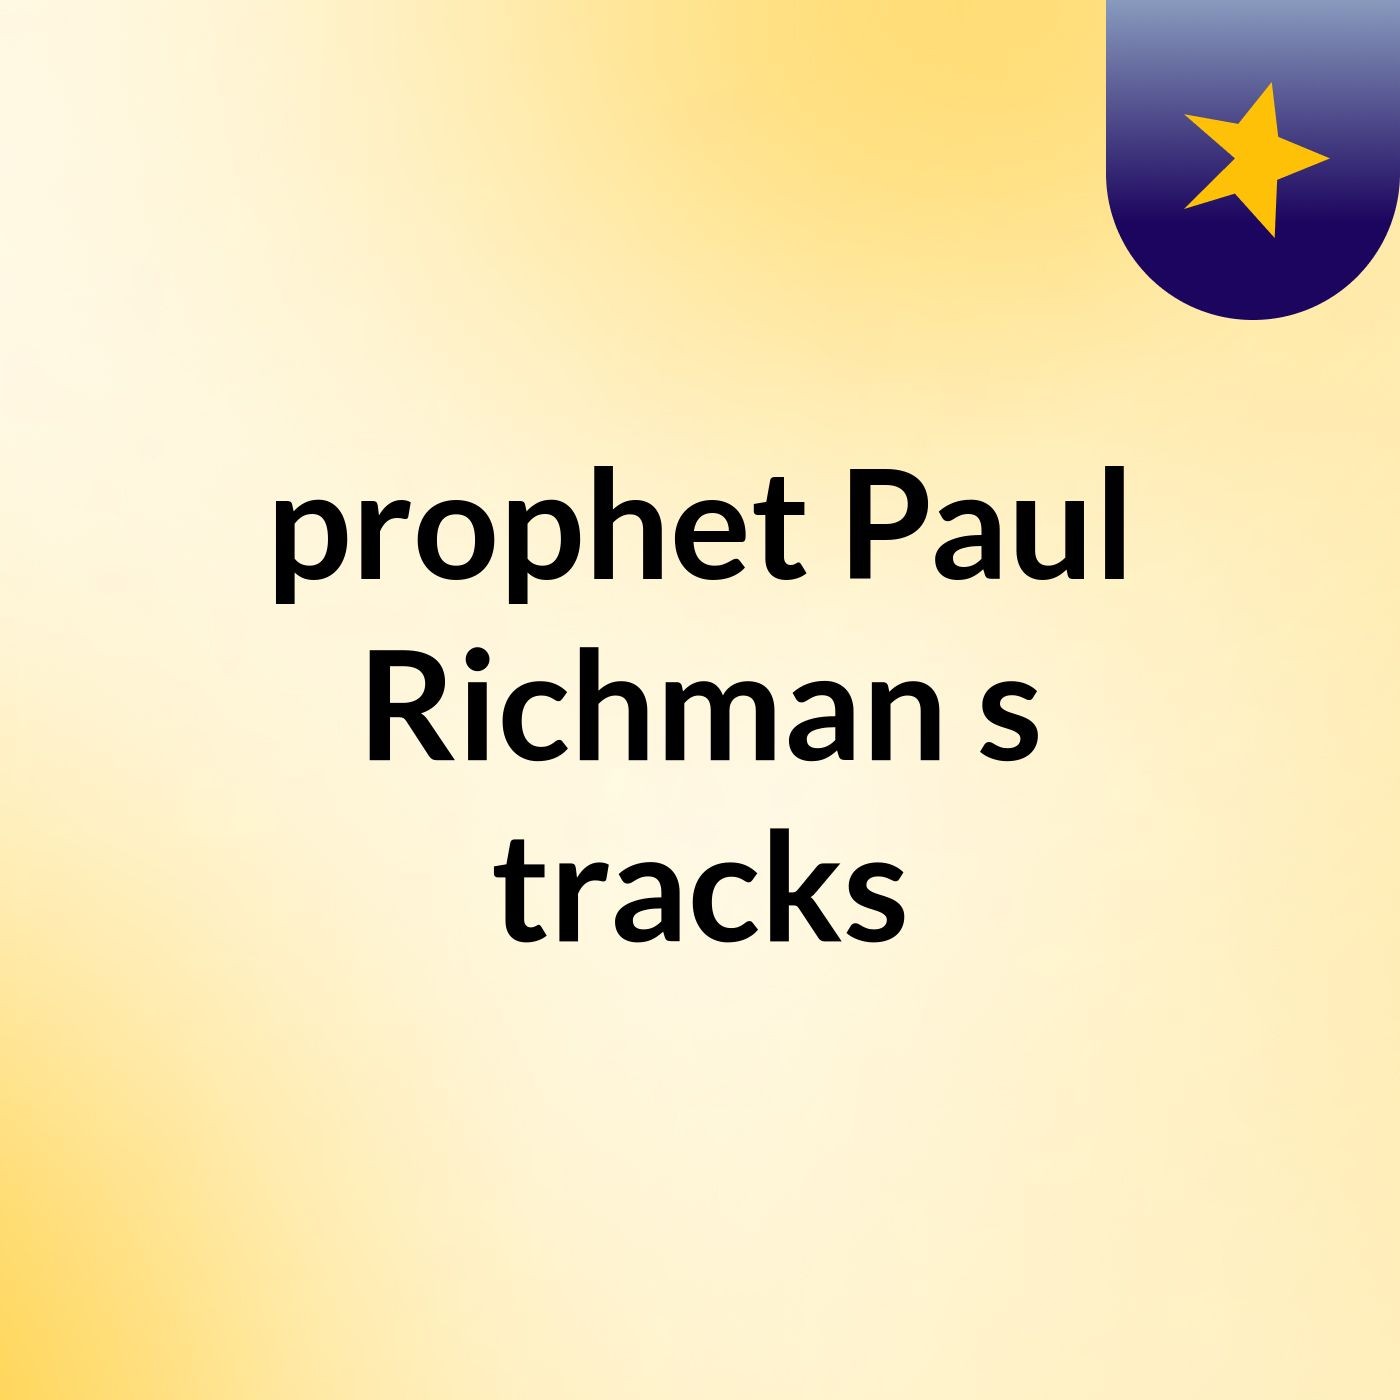 prophet Paul Richman's tracks